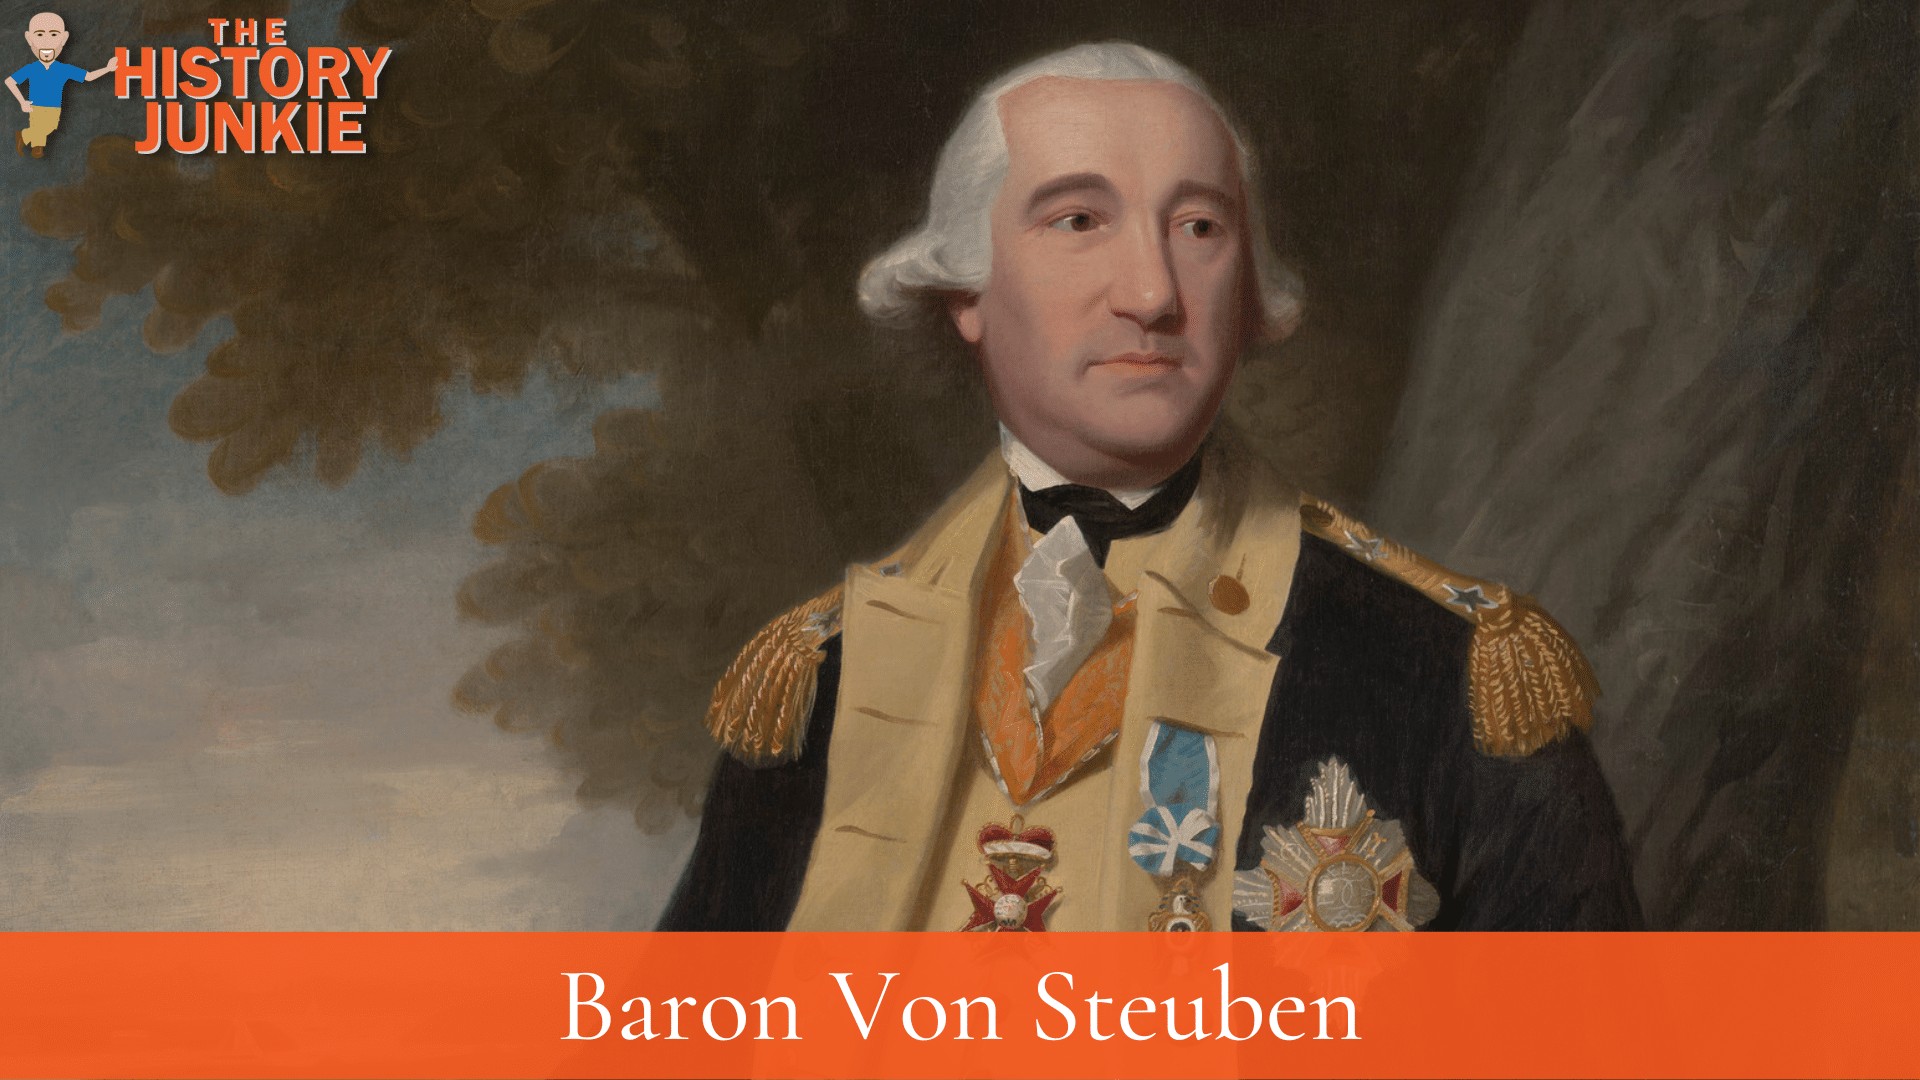 Baron Von Steuben